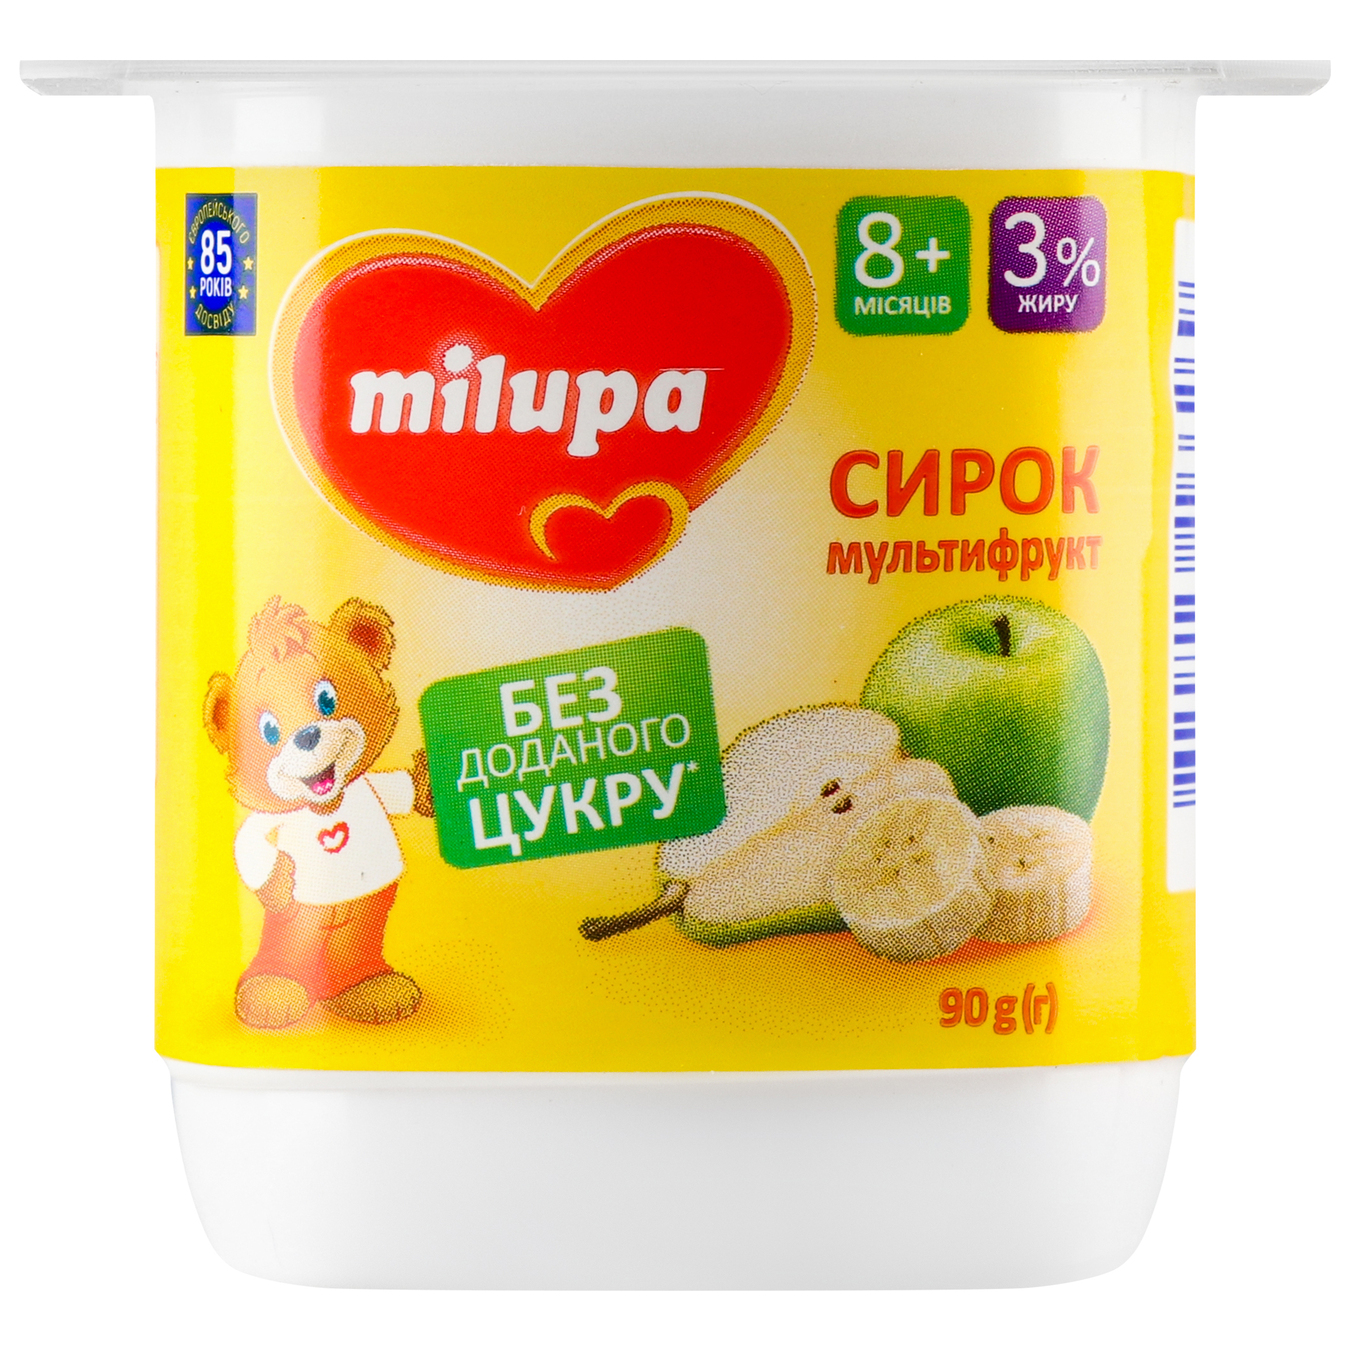 Сирок Milupa з біфідобактеріями мультфрукт  3% 90г